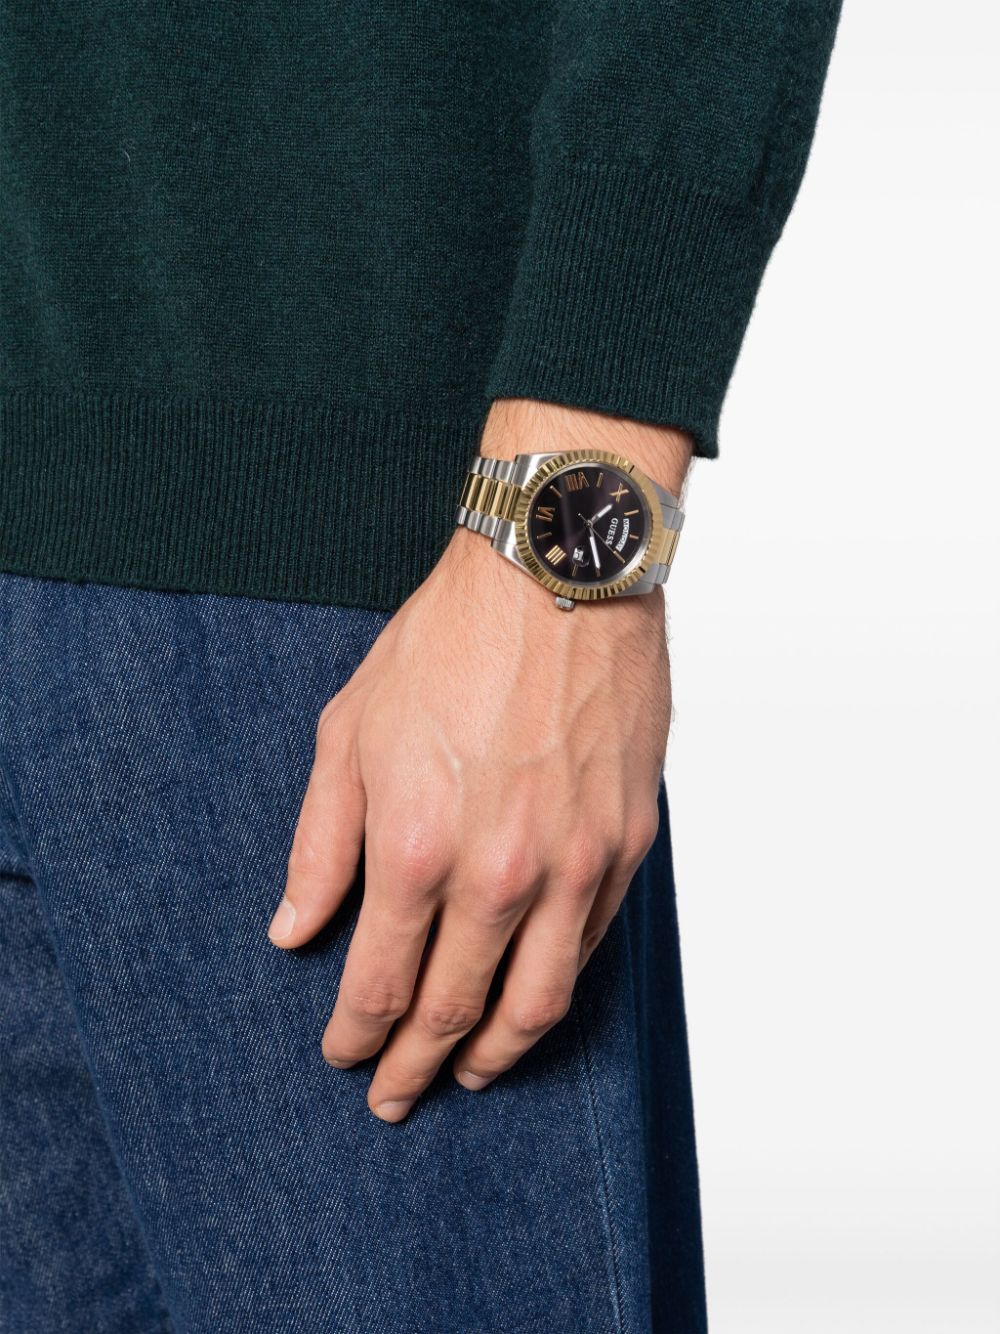 GUESS Watches Connoisseur Quartz 44mm - Farfetch